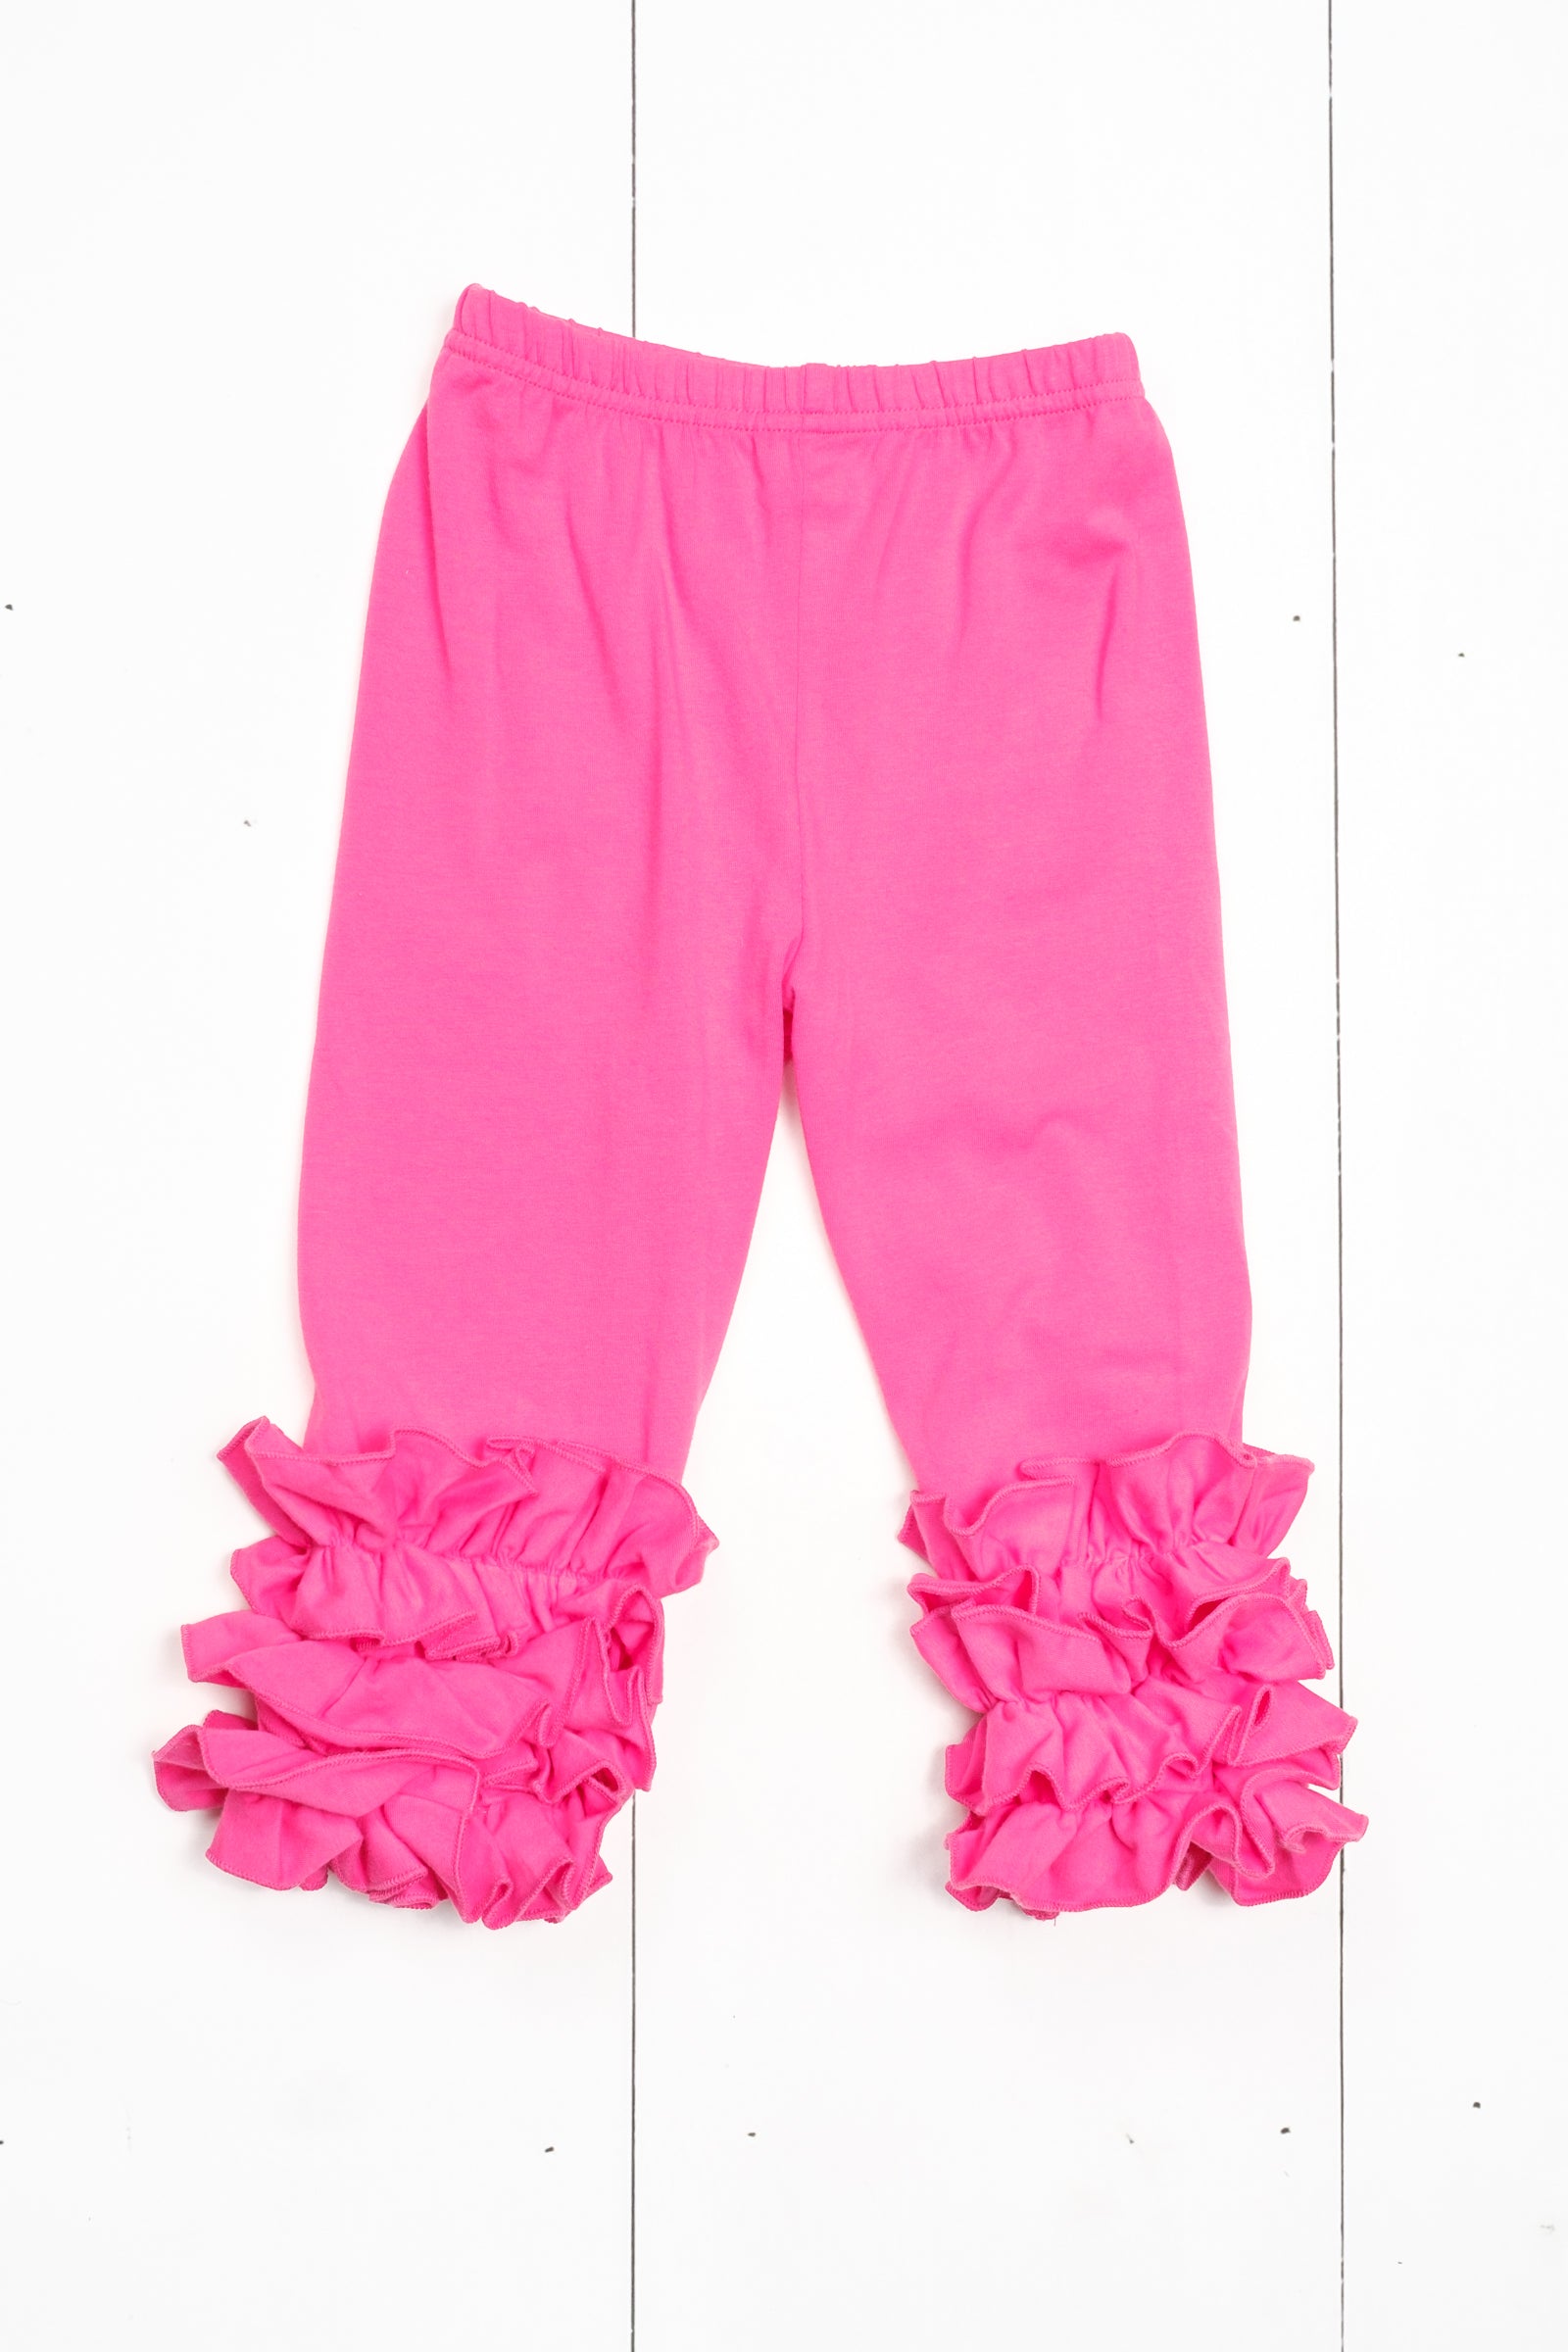 Hot Pink Ruffle Leggings